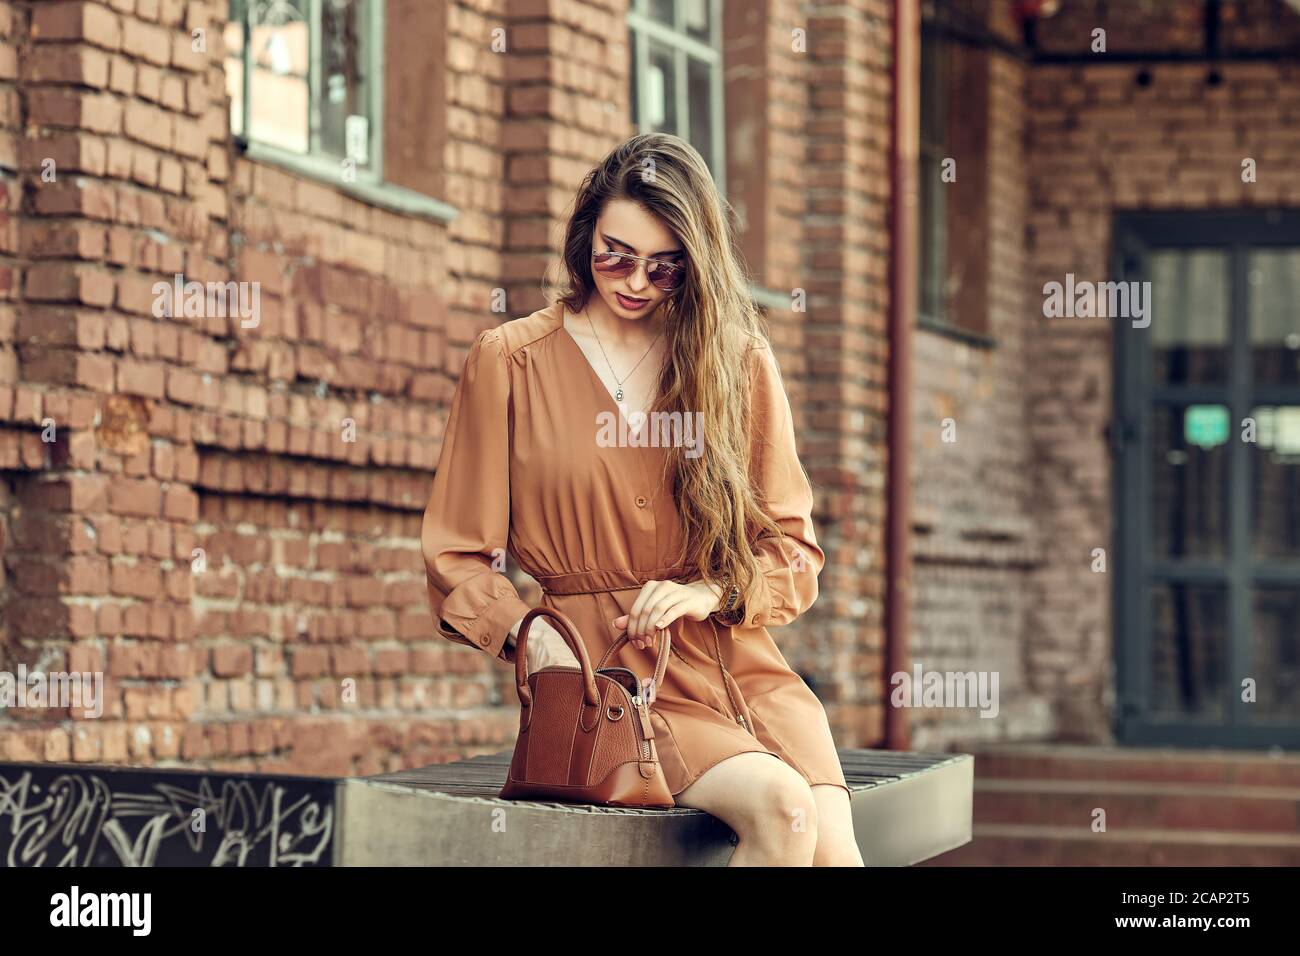 Mujer joven y bonita con vestido corto sentada en el banco y en busca de un someting en bolsa Foto de stock